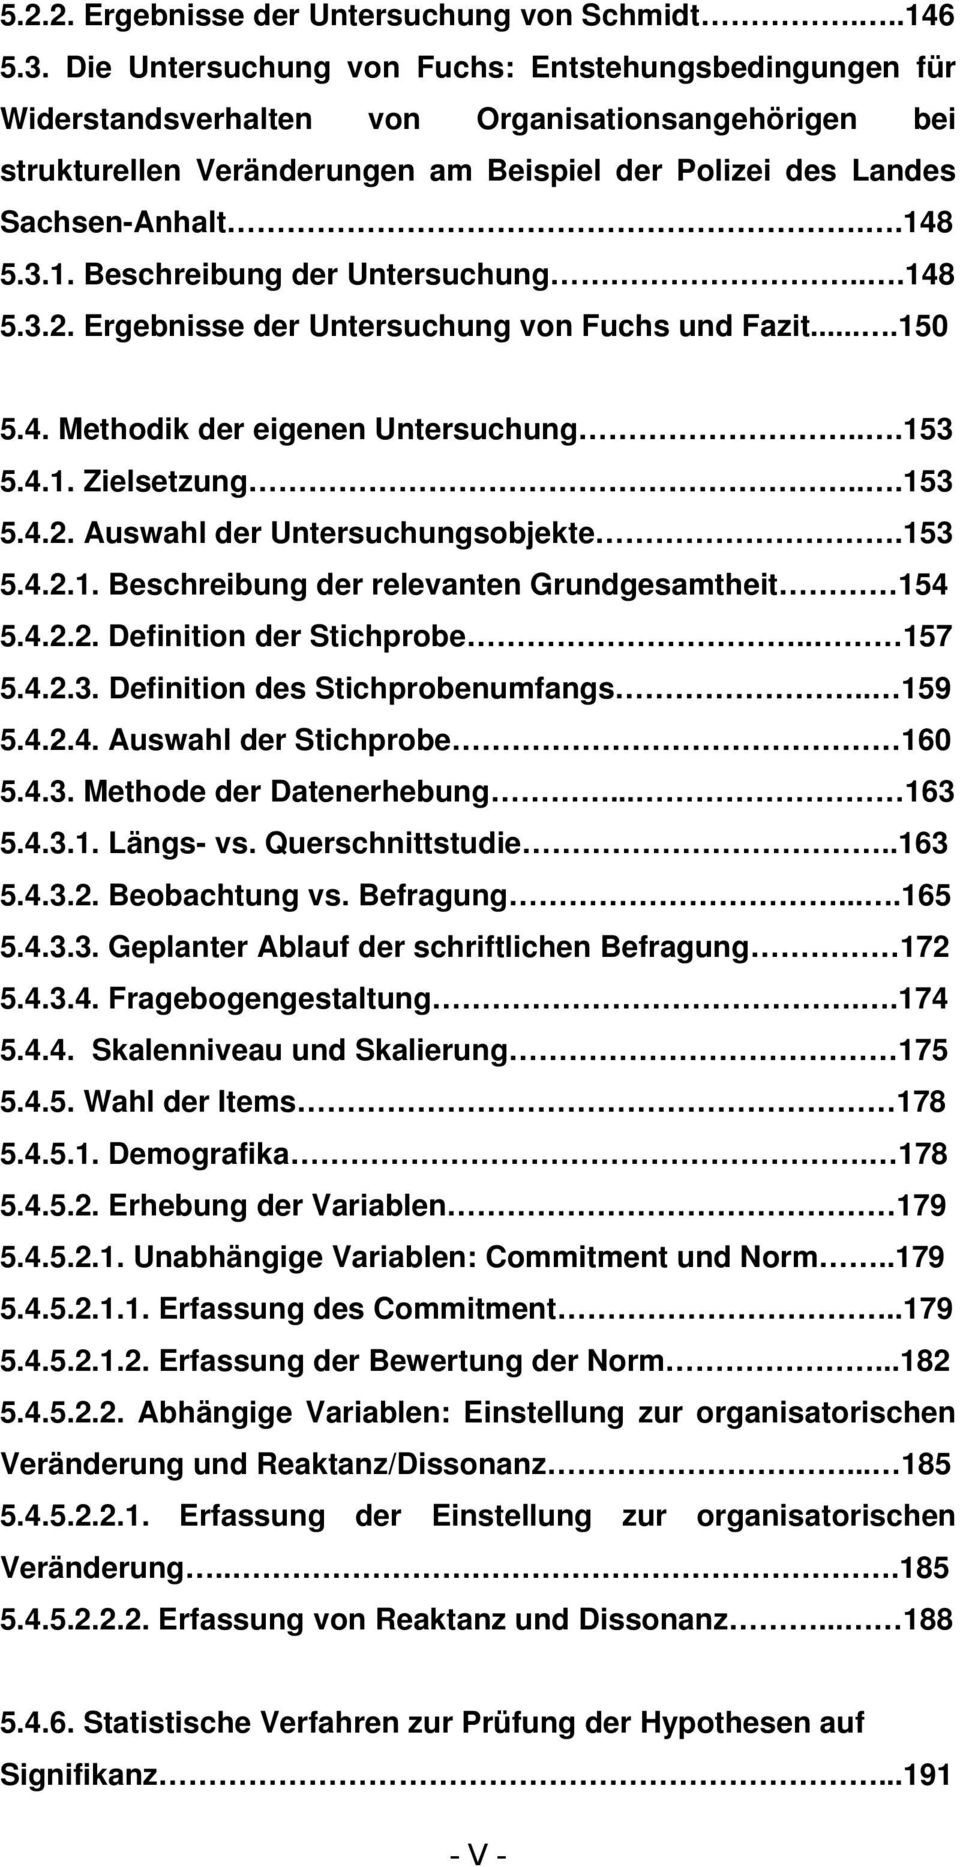 8 5.3.1. Beschreibung der Untersuchung...148 5.3.2. Ergebnisse der Untersuchung von Fuchs und Fazit....150 5.4. Methodik der eigenen Untersuchung...153 5.4.1. Zielsetzung...153 5.4.2. Auswahl der Untersuchungsobjekte.